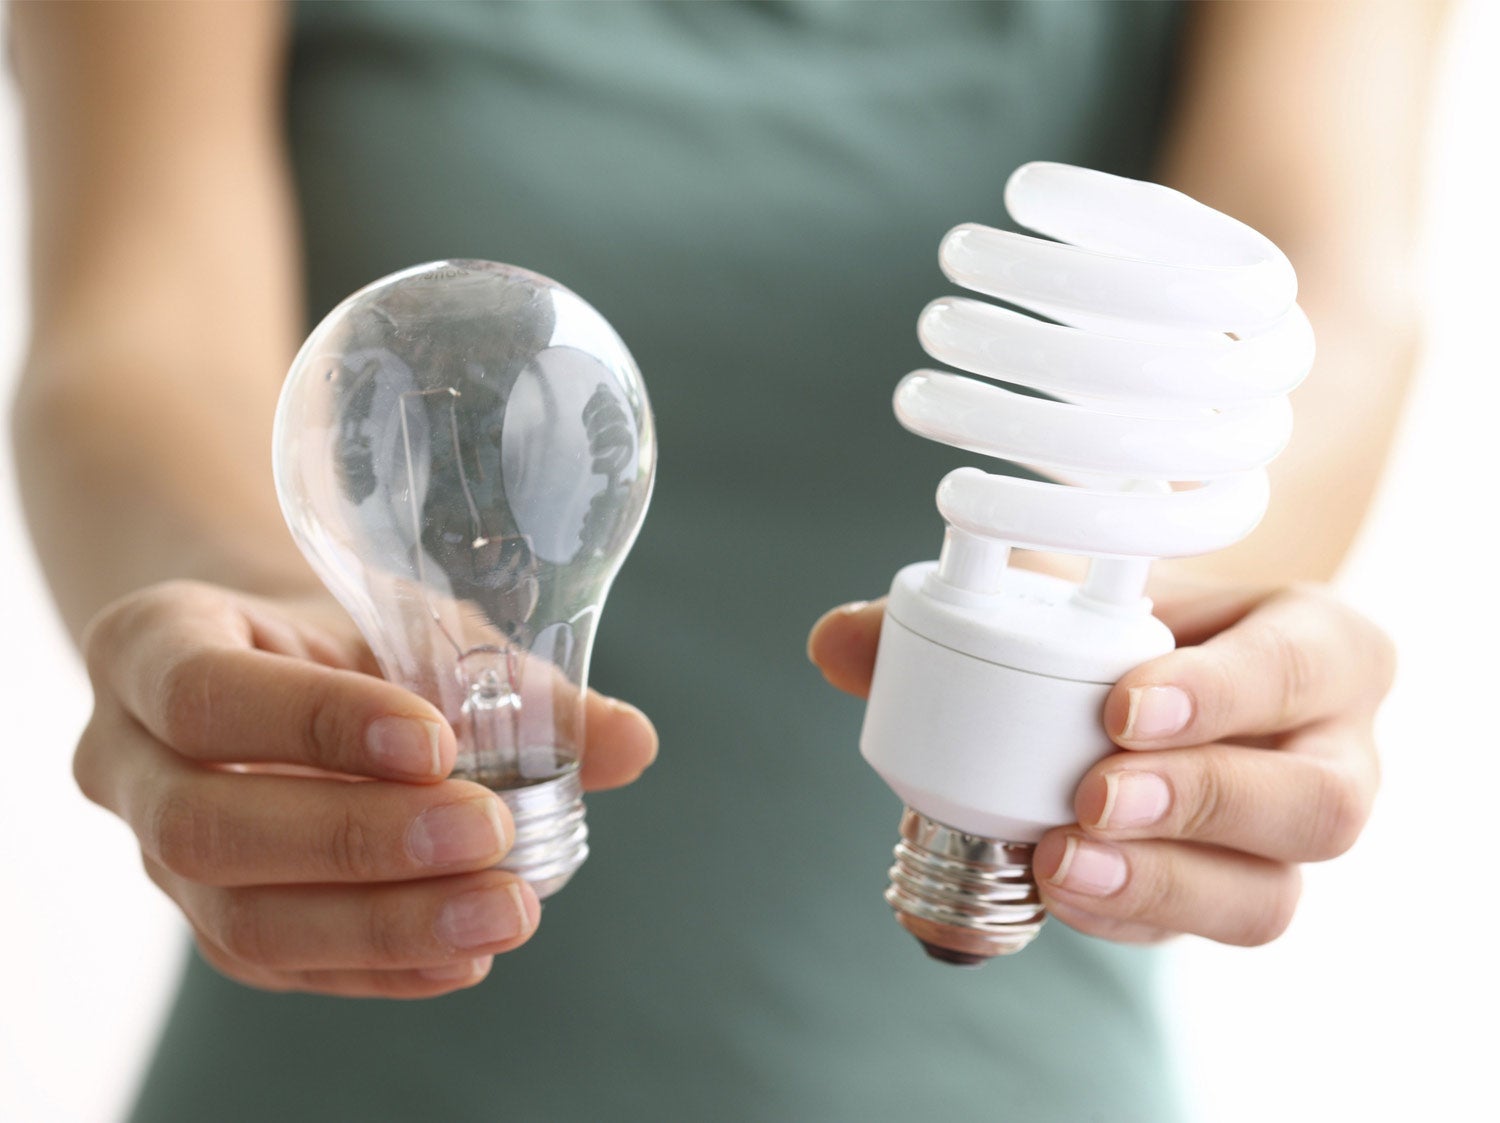 Changer ses ampoules pour des LED et faire des économies